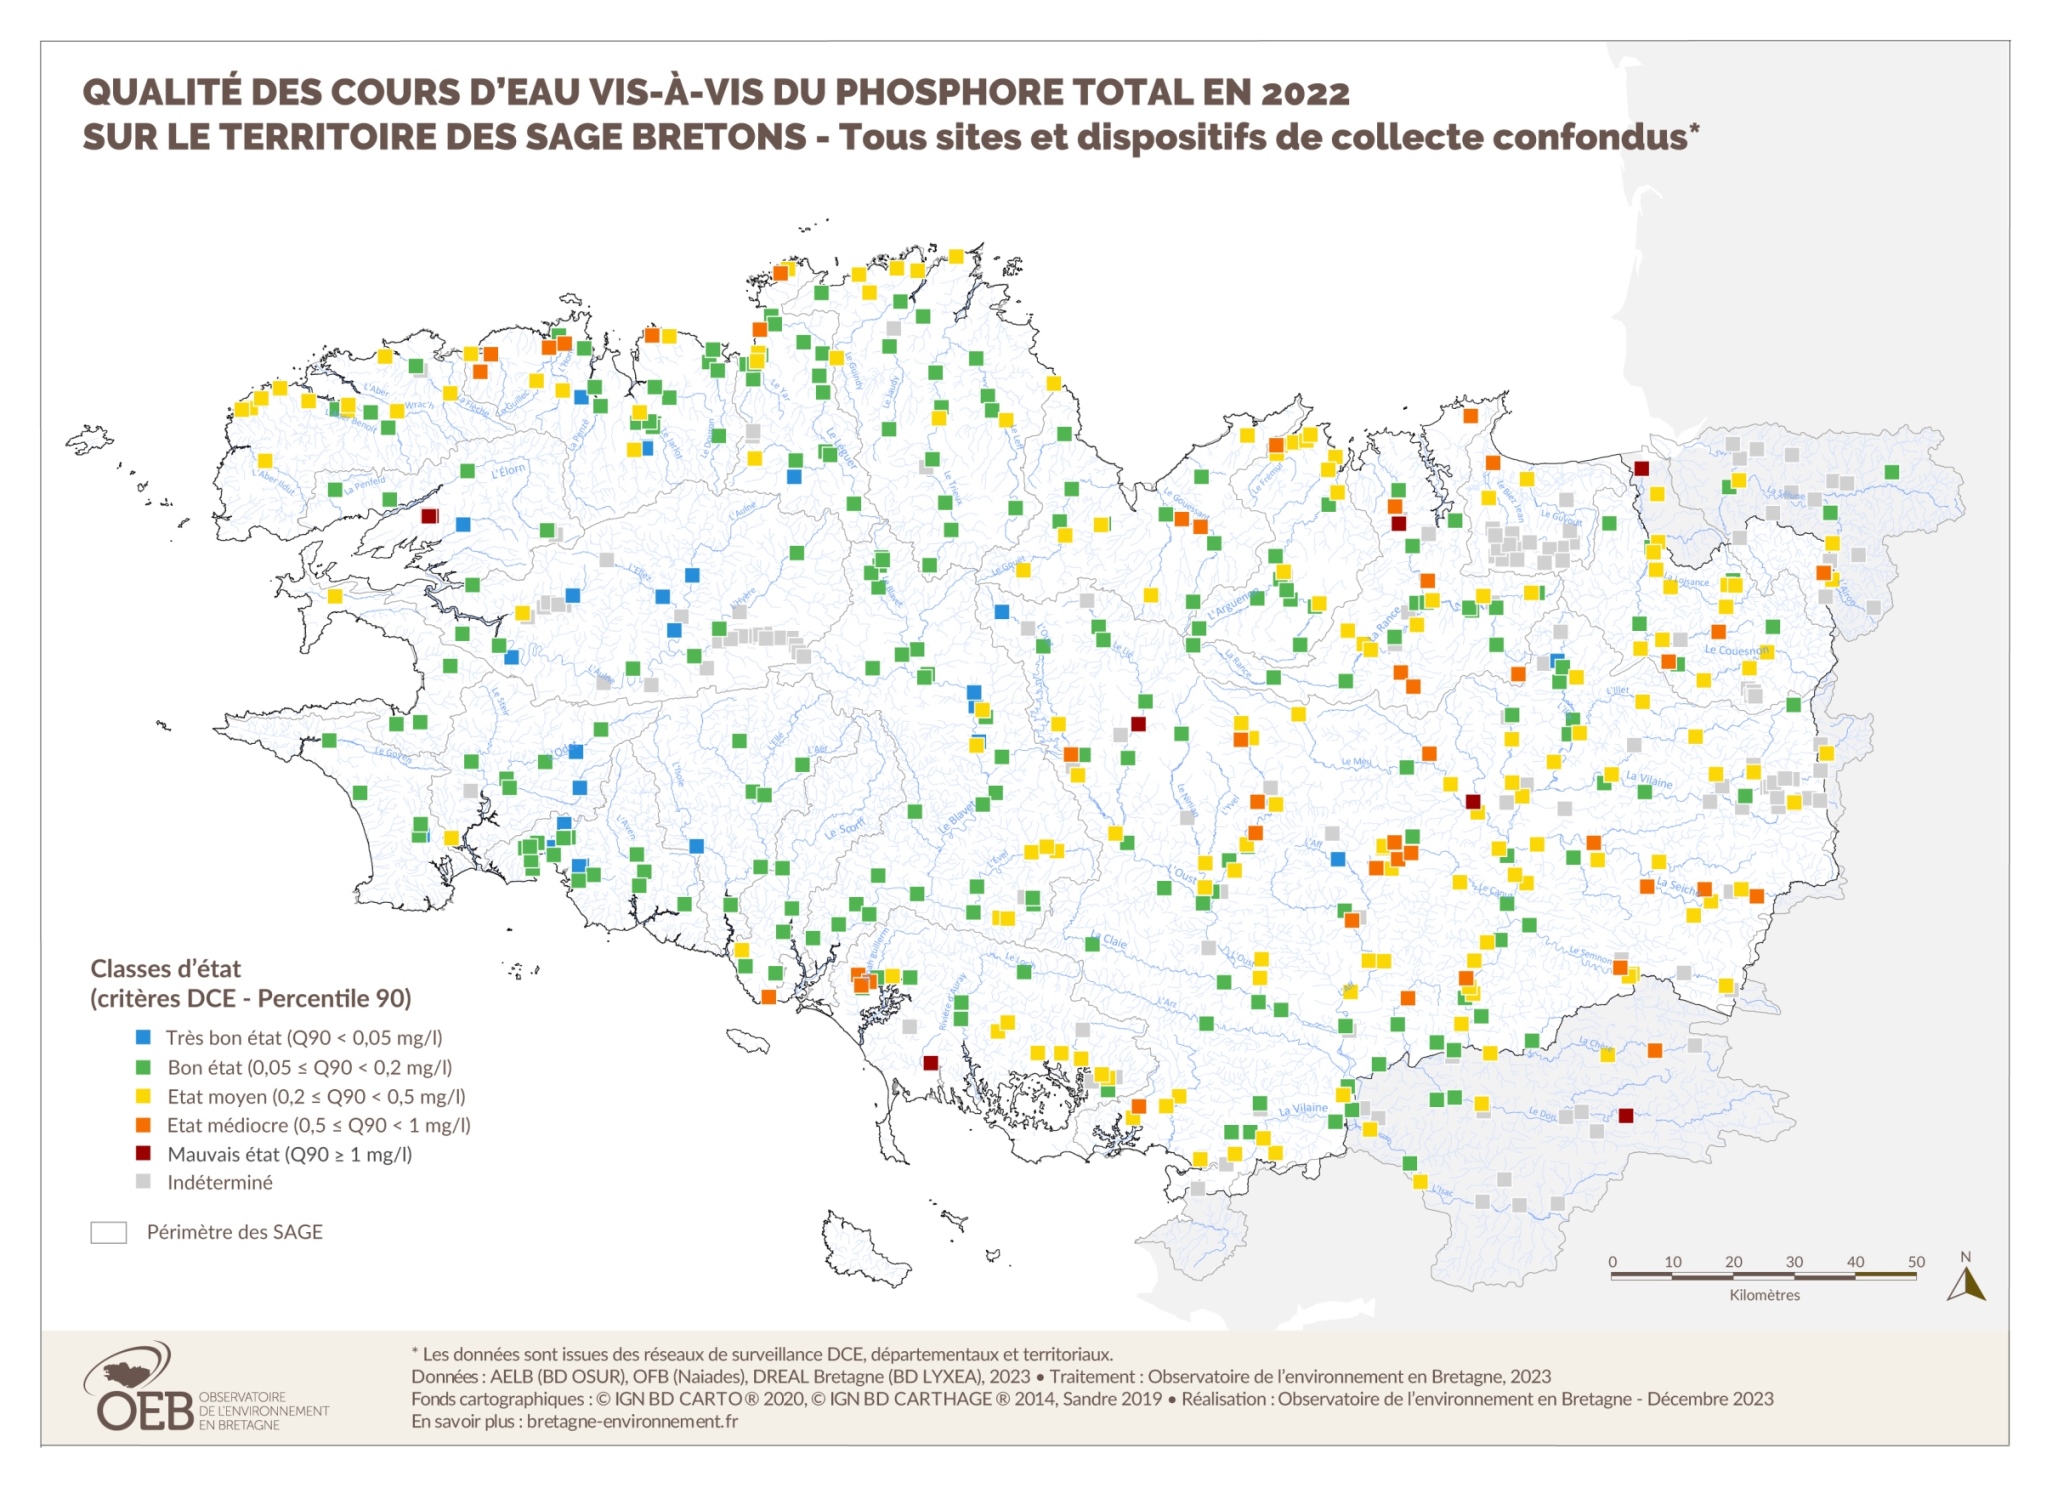 Qualité des cours d'eau bretons vis-à-vis des matières phosphorées dans les eaux de surface en 2014 - Réseau RCS - Bilan de l'eau Dreal Bretagne